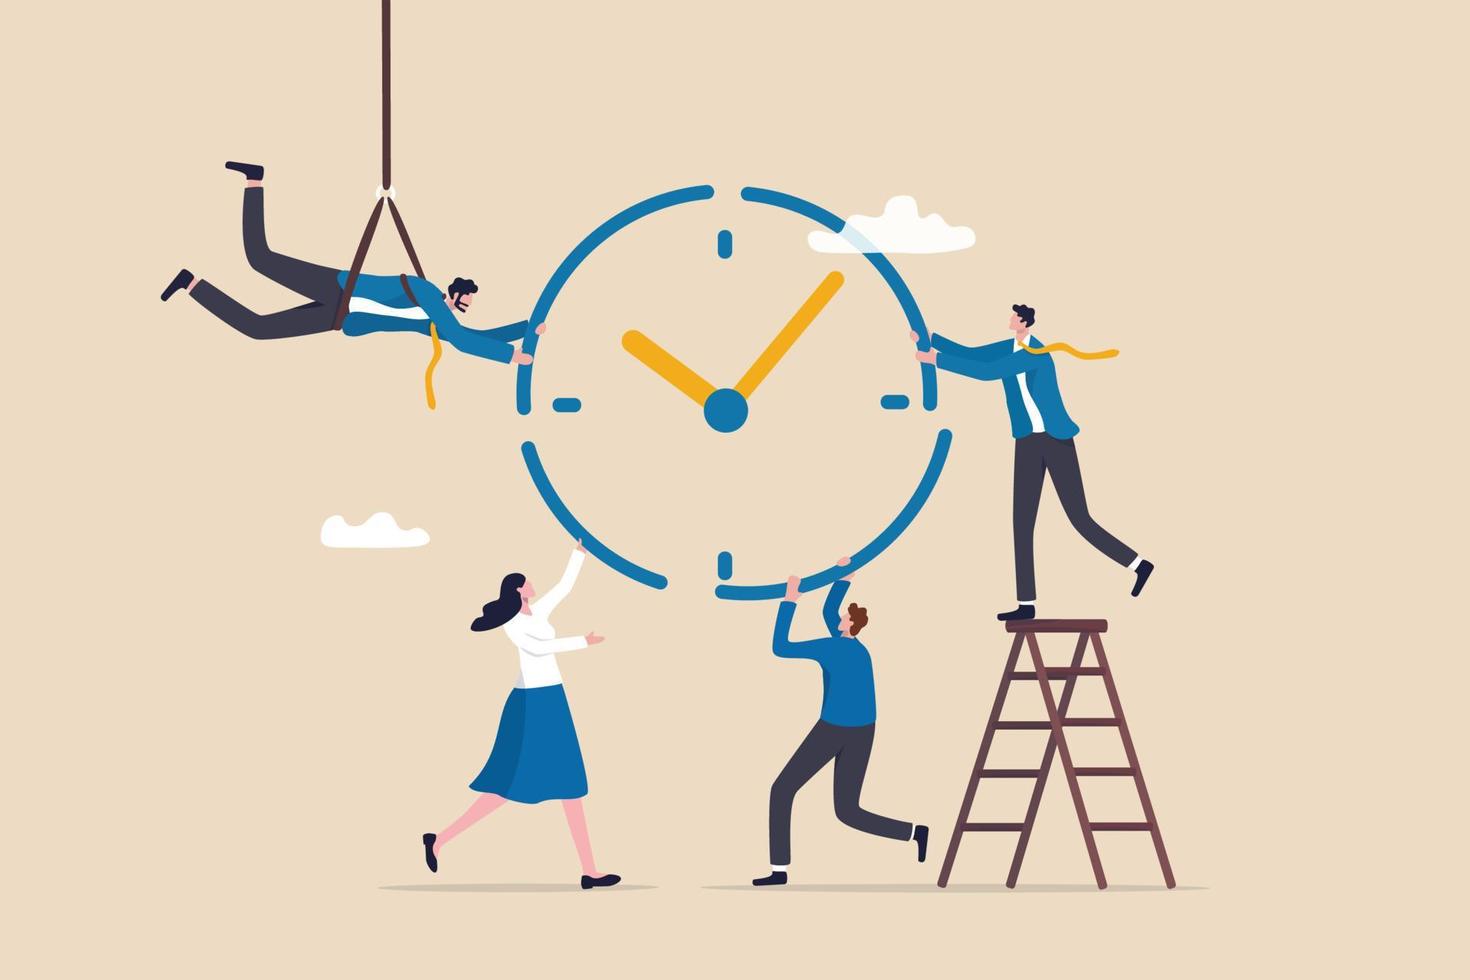 tidshantering eller projektledning för att styra team för att slutföra uppgifter eller strategisk planerare för att hantera resurser för att slutföra arbete inom deadline, affärsman och kvinna hjälper till att kombinera klocktimerbitar. vektor